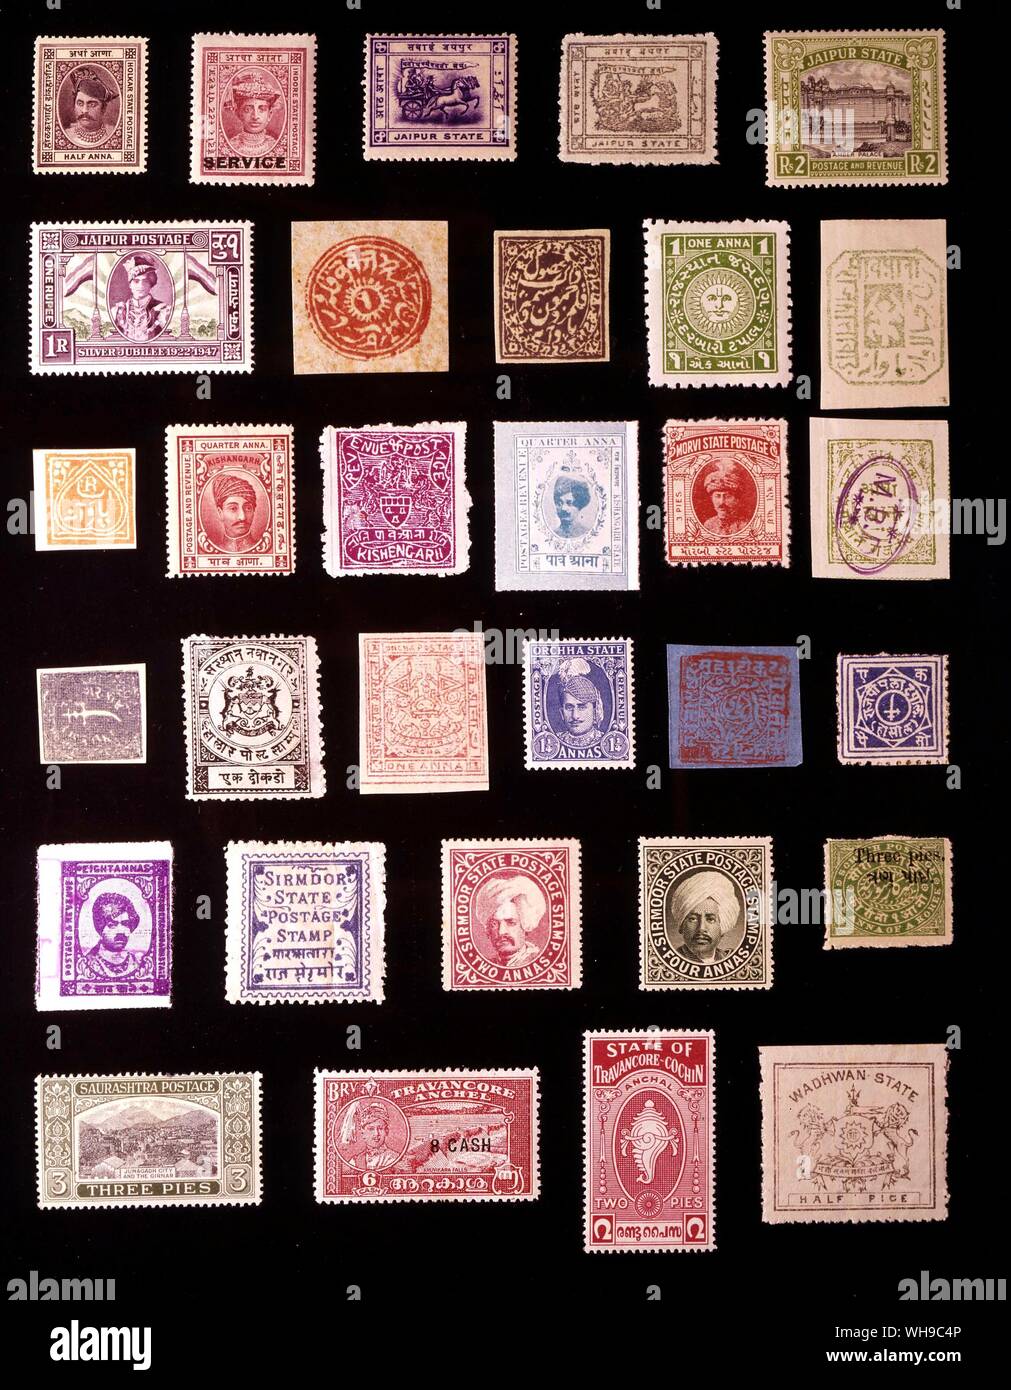 Asien - indischer FÜRSTENSTAATEN (Seite 2 von 2): (von links nach rechts) 1. Indore (holkar). 0.5 Anna, 1889, 2. Indore, 0,5 Anna, 1904, 3. Jaipur, 8 Hannas, 1905, 4. Jaipur, 0,5 Anna, 1913, 5. Jaipur, 2 Rupien, 1931, 6. Jaipur, 1 Rupie, 1948, 7. Jammu und Kaschmir, 1 Anna, 1869, 8. Jammu und Kaschmir, 0,25 Anna, 1883, 9. Jasdan, 1 Anna 1942, 10. Jhalawar, 0,25 Anna, 1887, 11. Feudalstaat, 0,25 Anna, 1882, 12. Kishangarh, 0,25 Anna, 1904, 13. Kishangarh, 0,25 Anna 1899, 14. Kishangarh, 0,25 Anna, 1912, 15. Morvi, 3 Pies, 1934, 16. Nandgaon, 0,5 Anna, 1893, 17. Docra Nawanagar, 1, 1877, 18. Nawanagar, 1 docra, Stockfoto